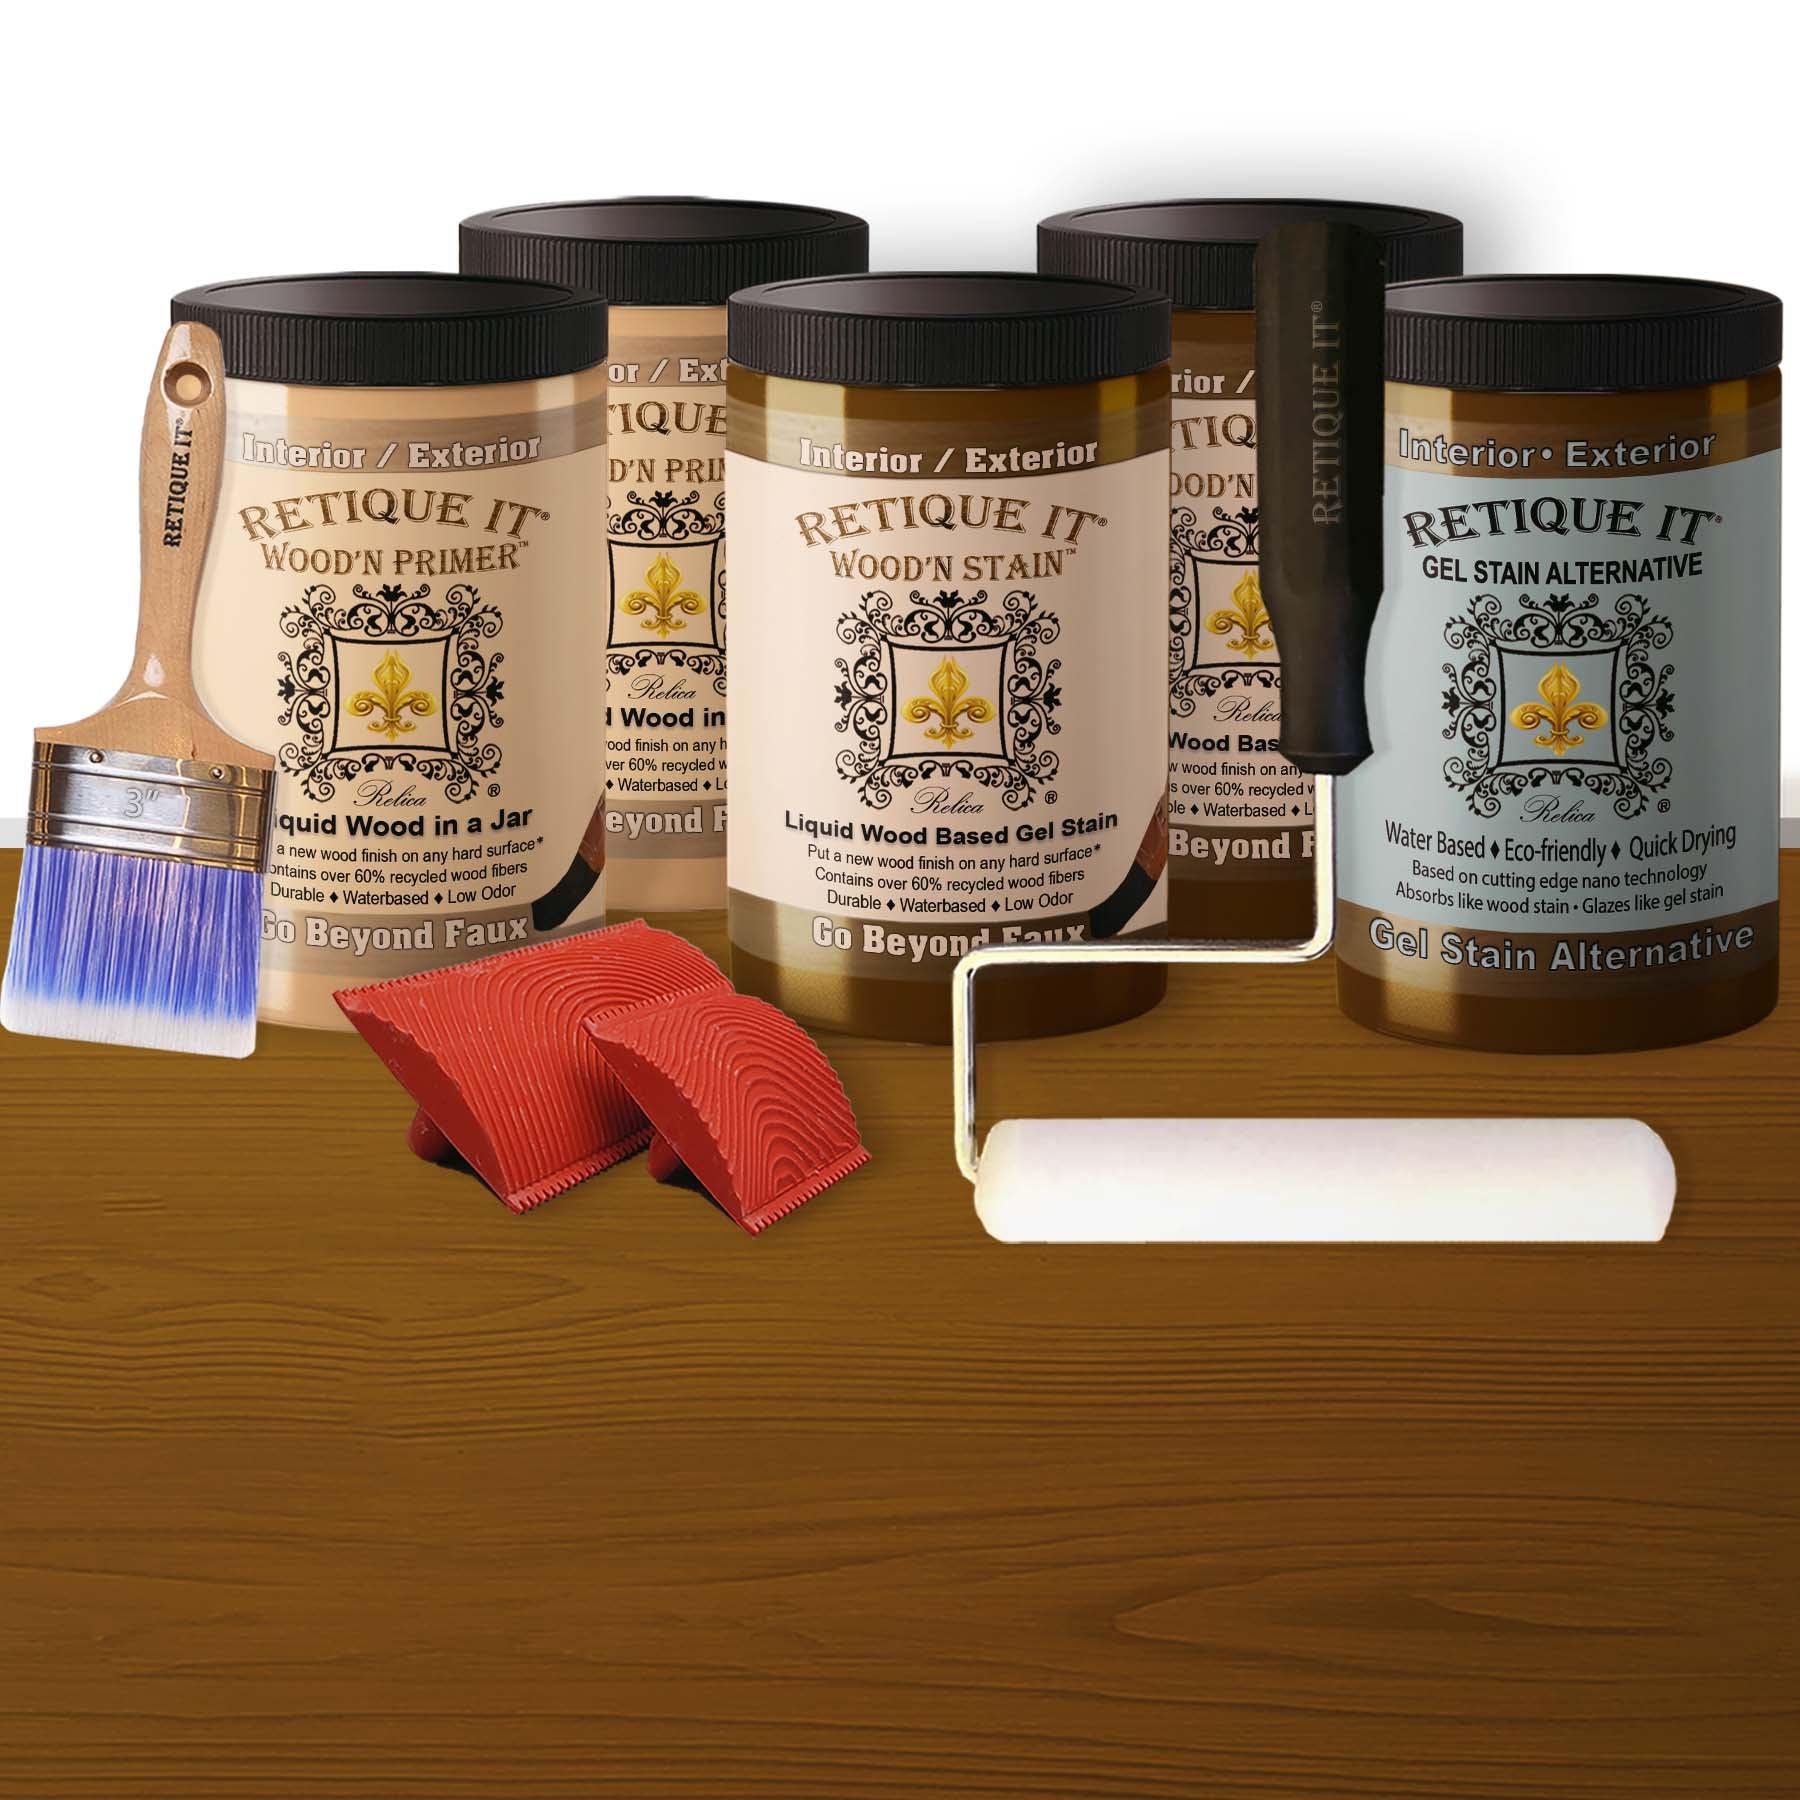 Liquid Wood Kit - Dark Walnut Oil-based Stain